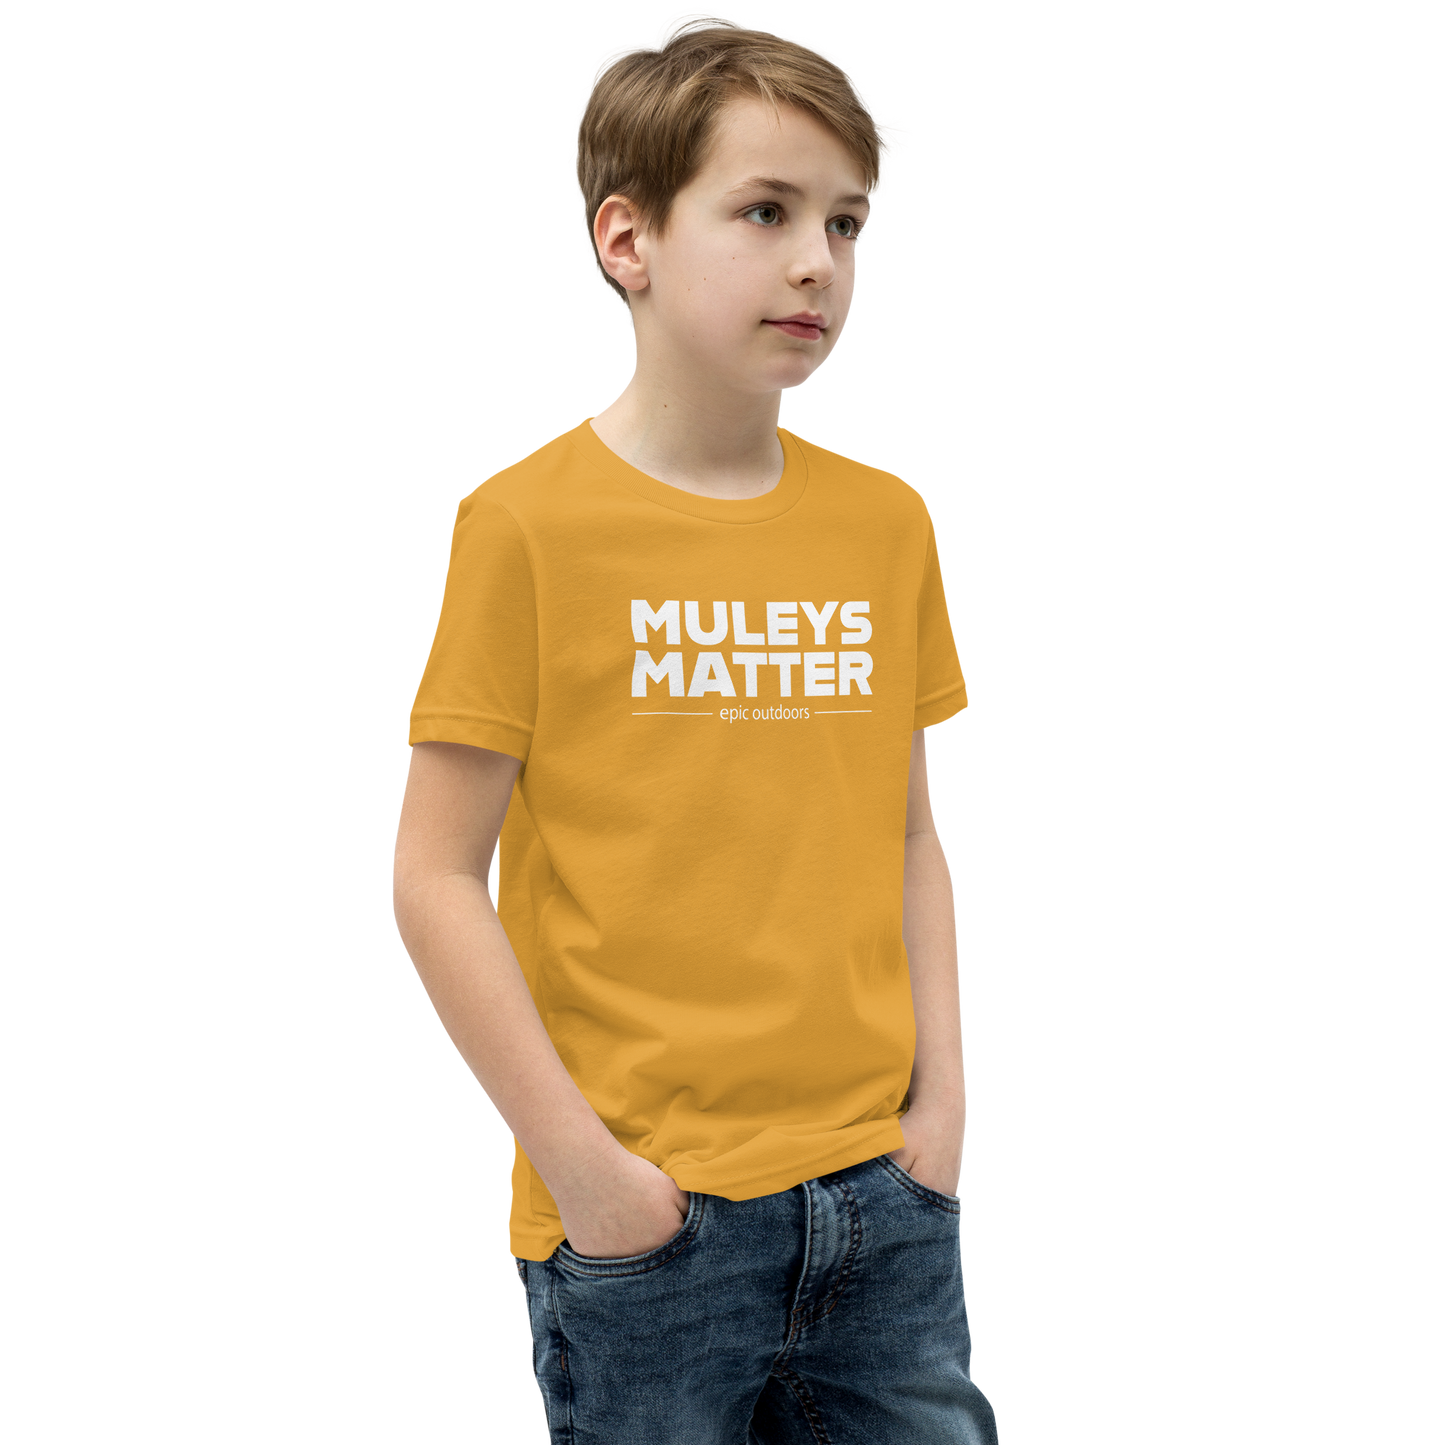 Muleys Matter White Logo Youth T-Shirt